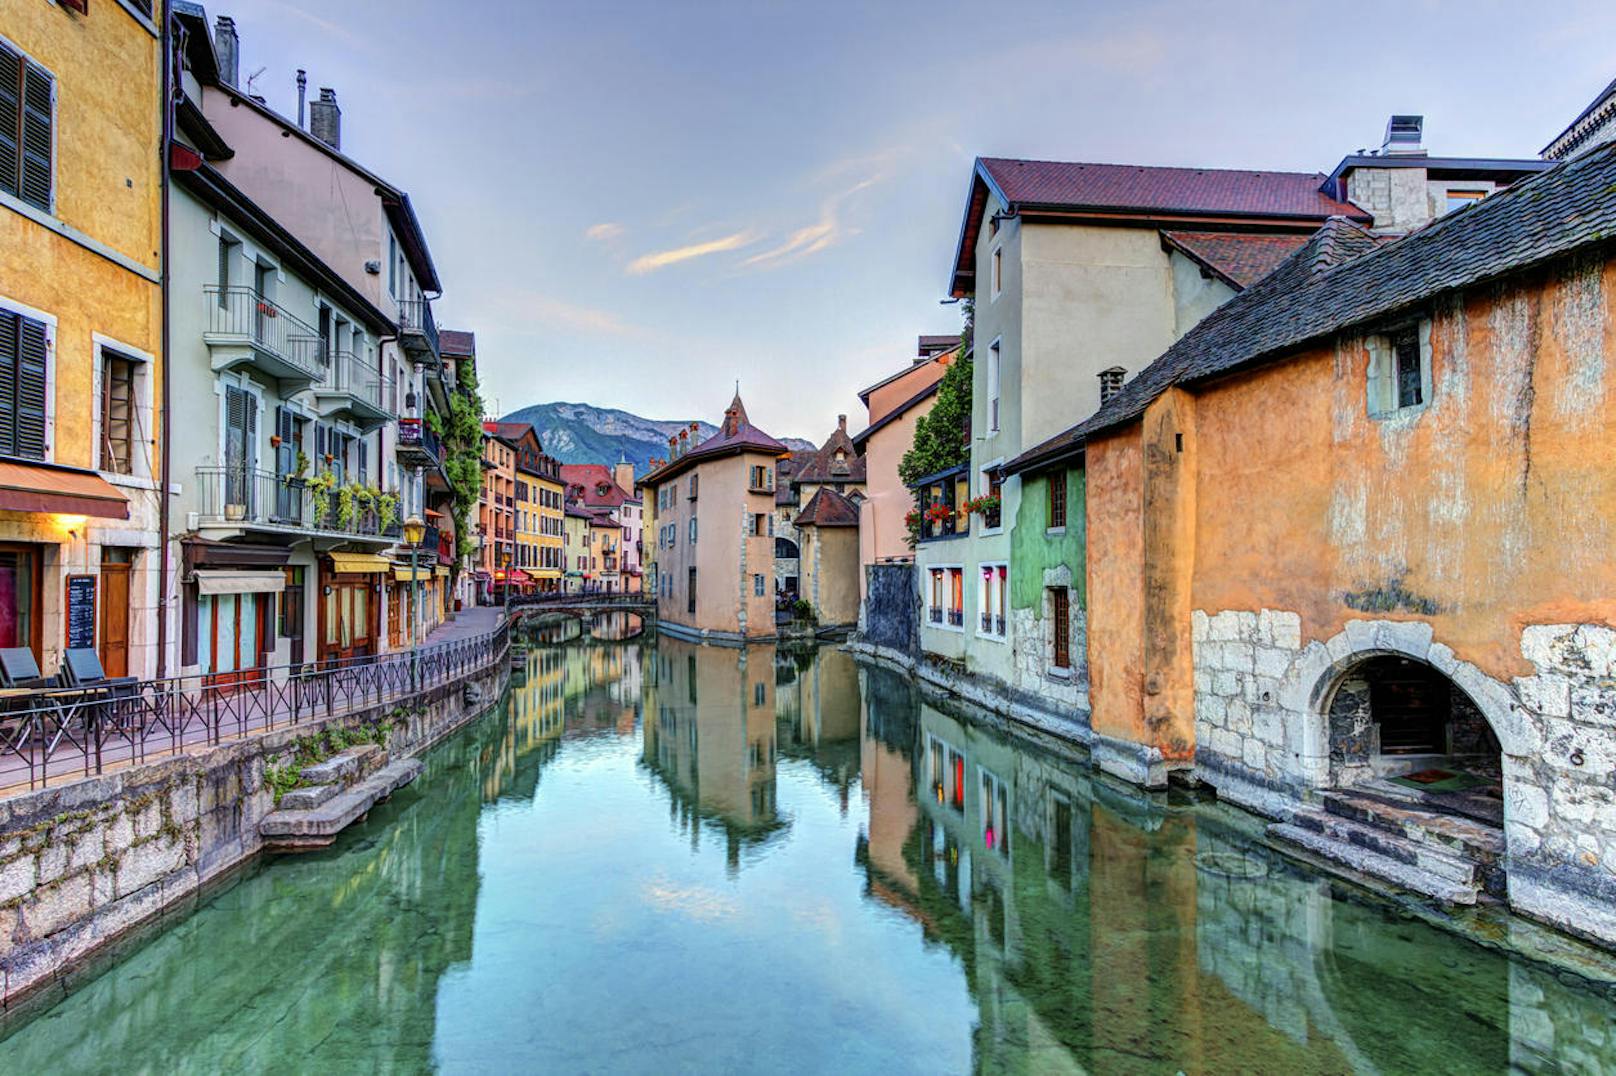 <b>Alternative:</b> Die ostfranzösische Kleinstadt Annecy wird aufgrund ihrer pittoresken Kanäle, die durch die Altstadt führen, oft als "Venedig der Alpen" bezeichnet.